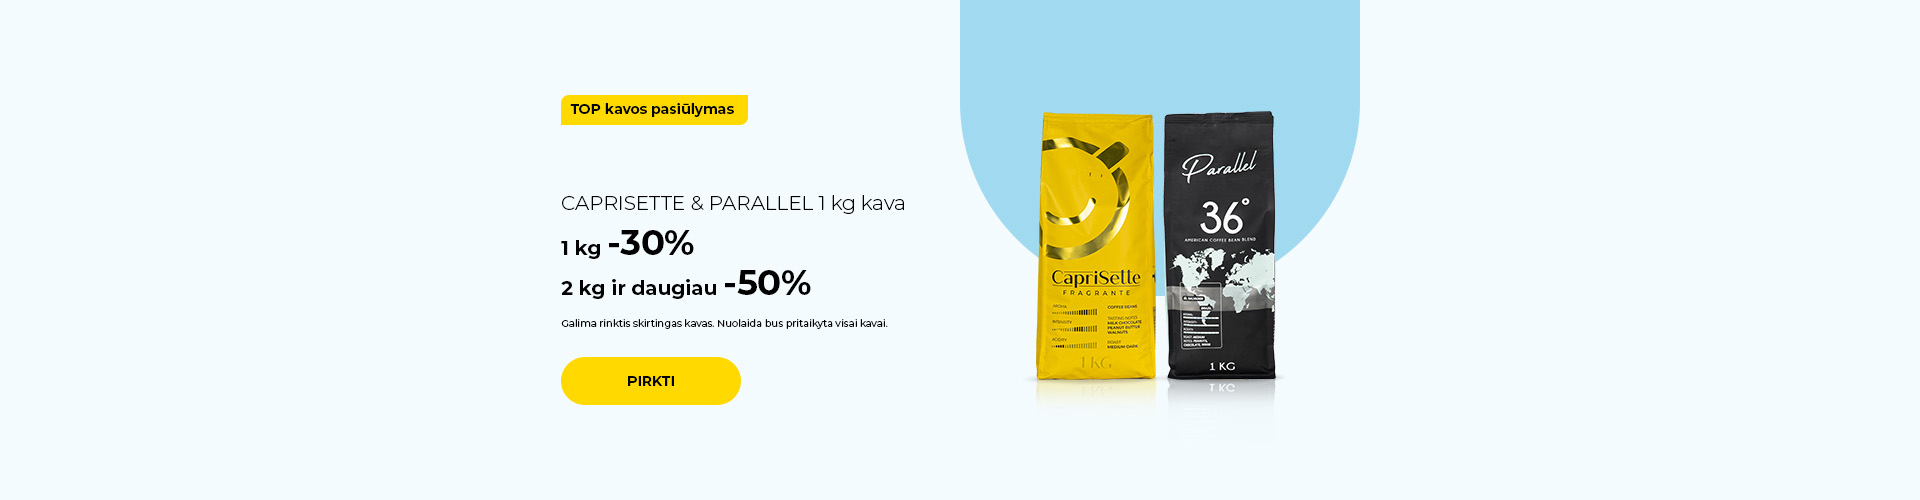 CAPRISETTE & PARALLEL 1 kg kava 1 kg -30% 2 kg ir daugiau -50%